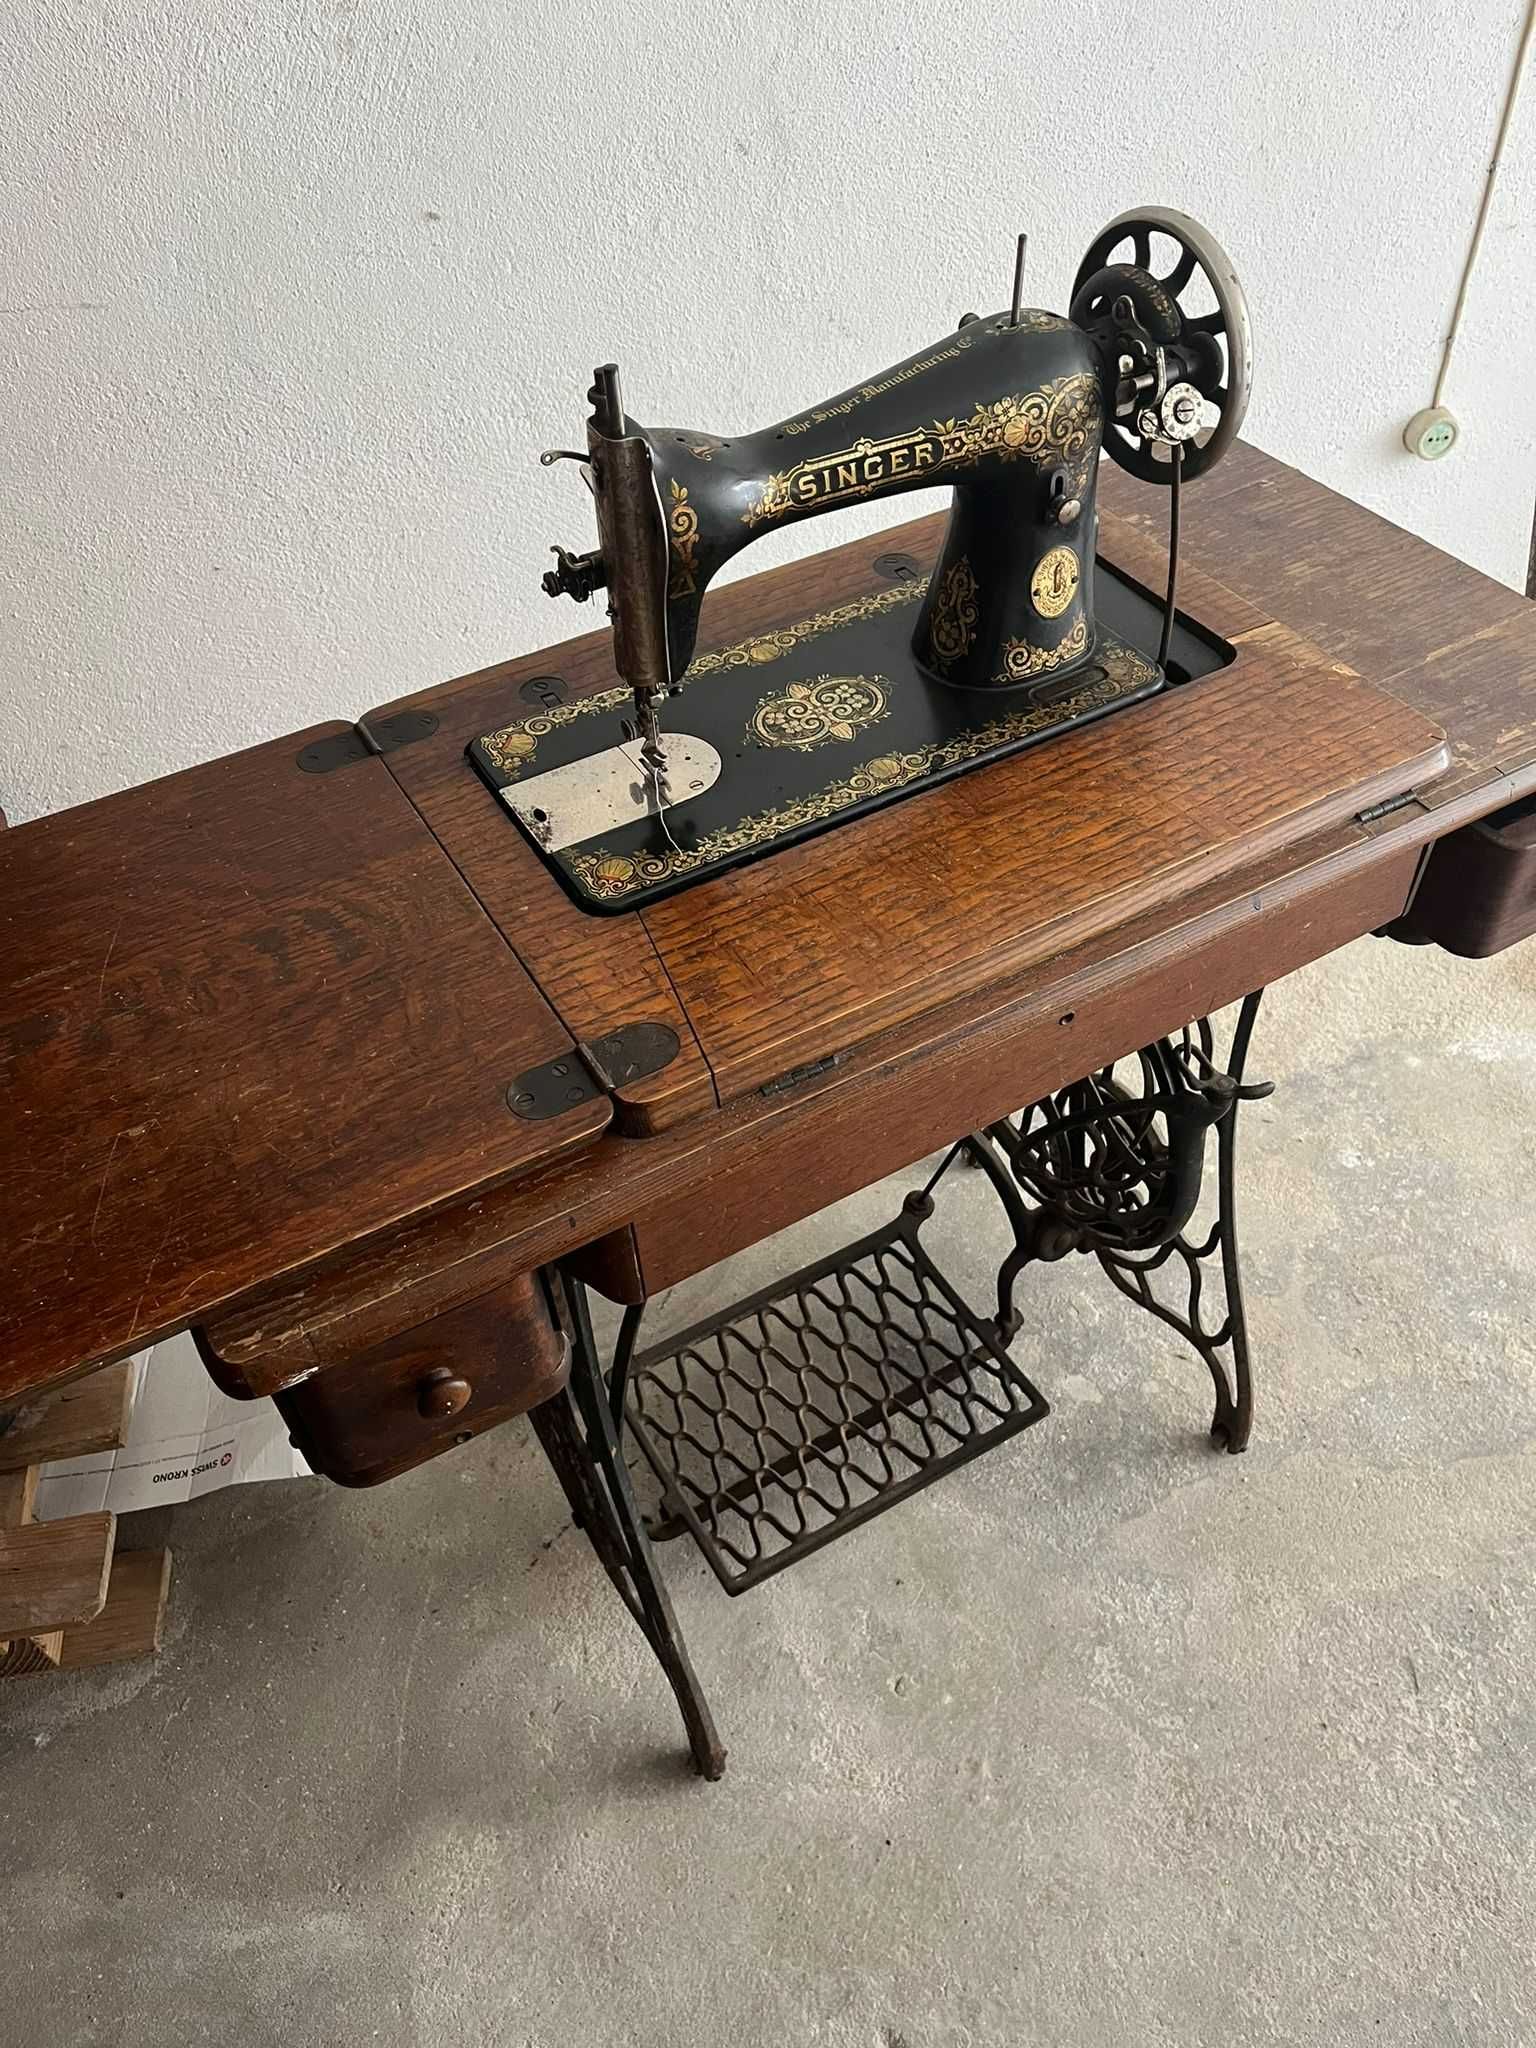 Vendo máquina de costura antiga para verdadeiros amantes de coleções